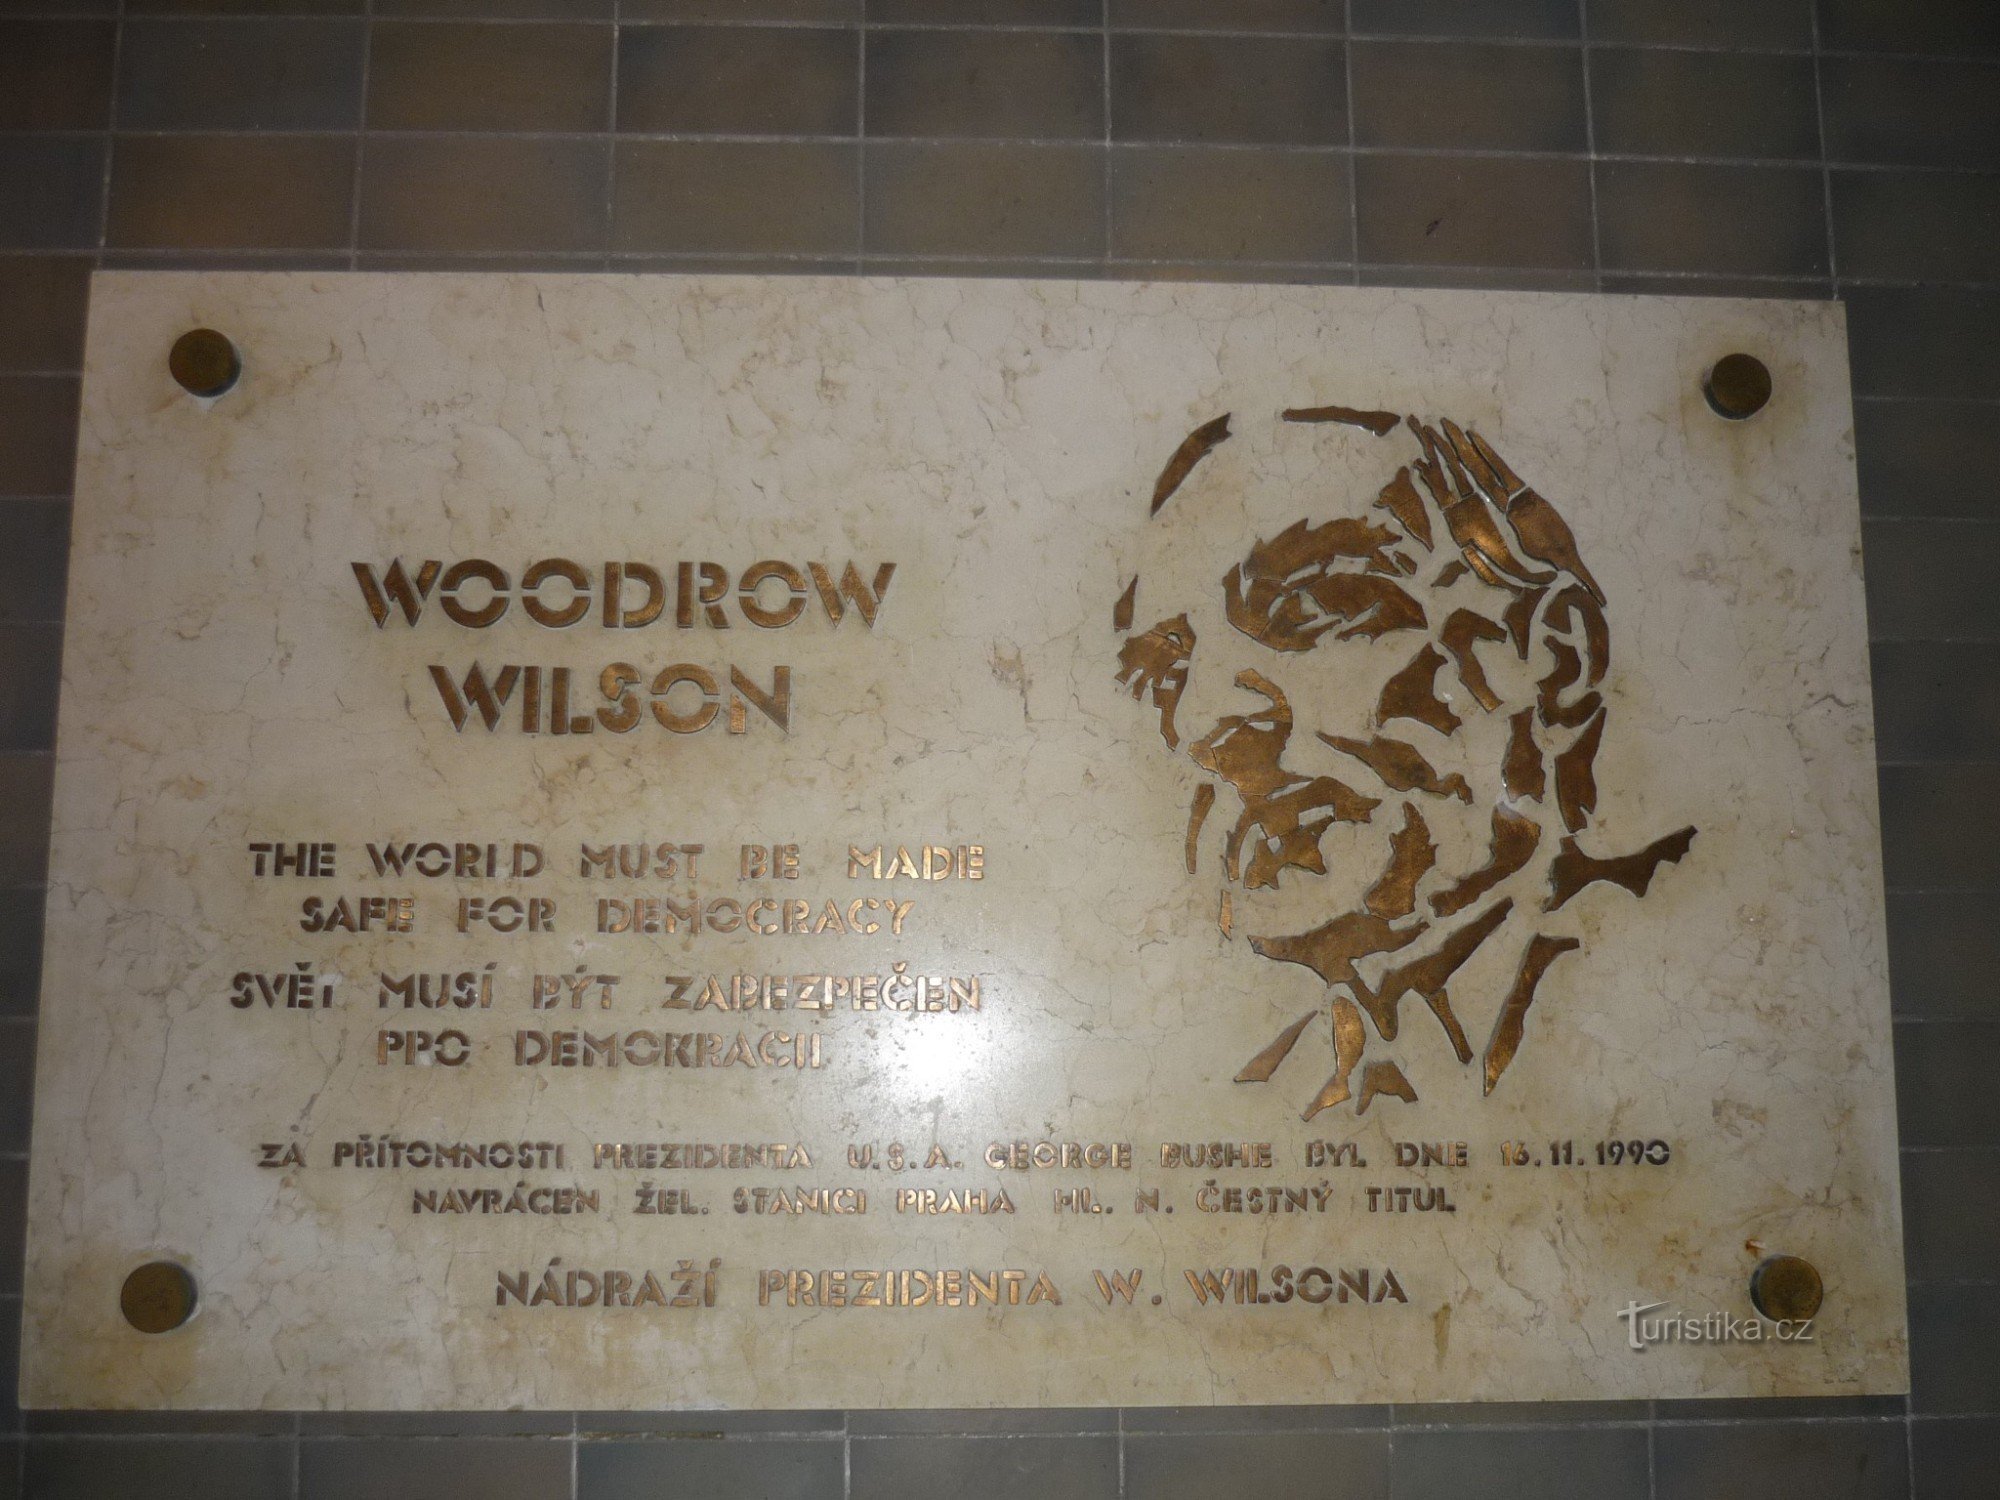 Targa commemorativa di W. Wilson presso la stazione ferroviaria principale di Praga